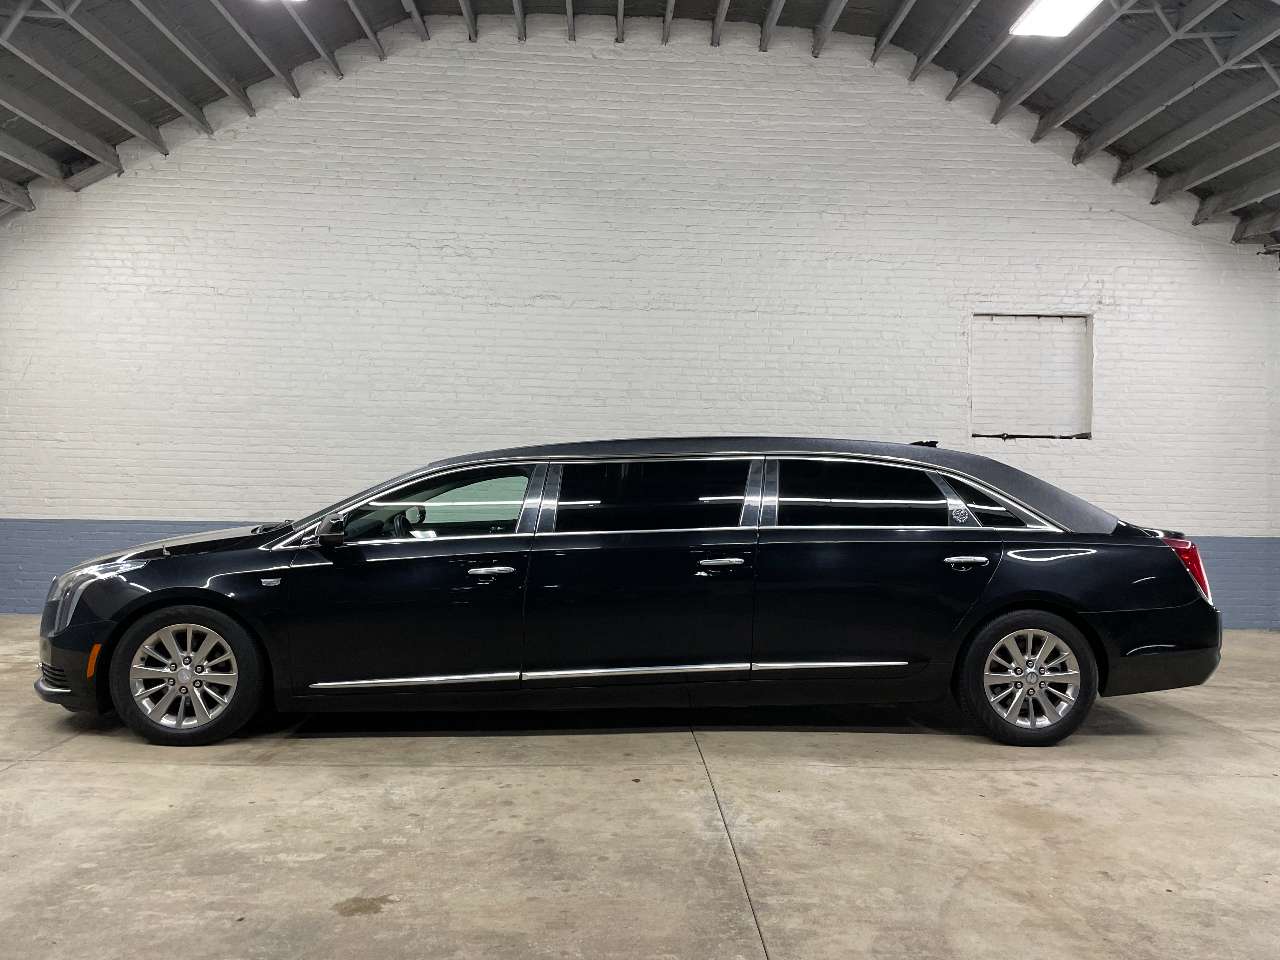 2018 Cadillac S S 52   6 Door Limousine 1661510537490